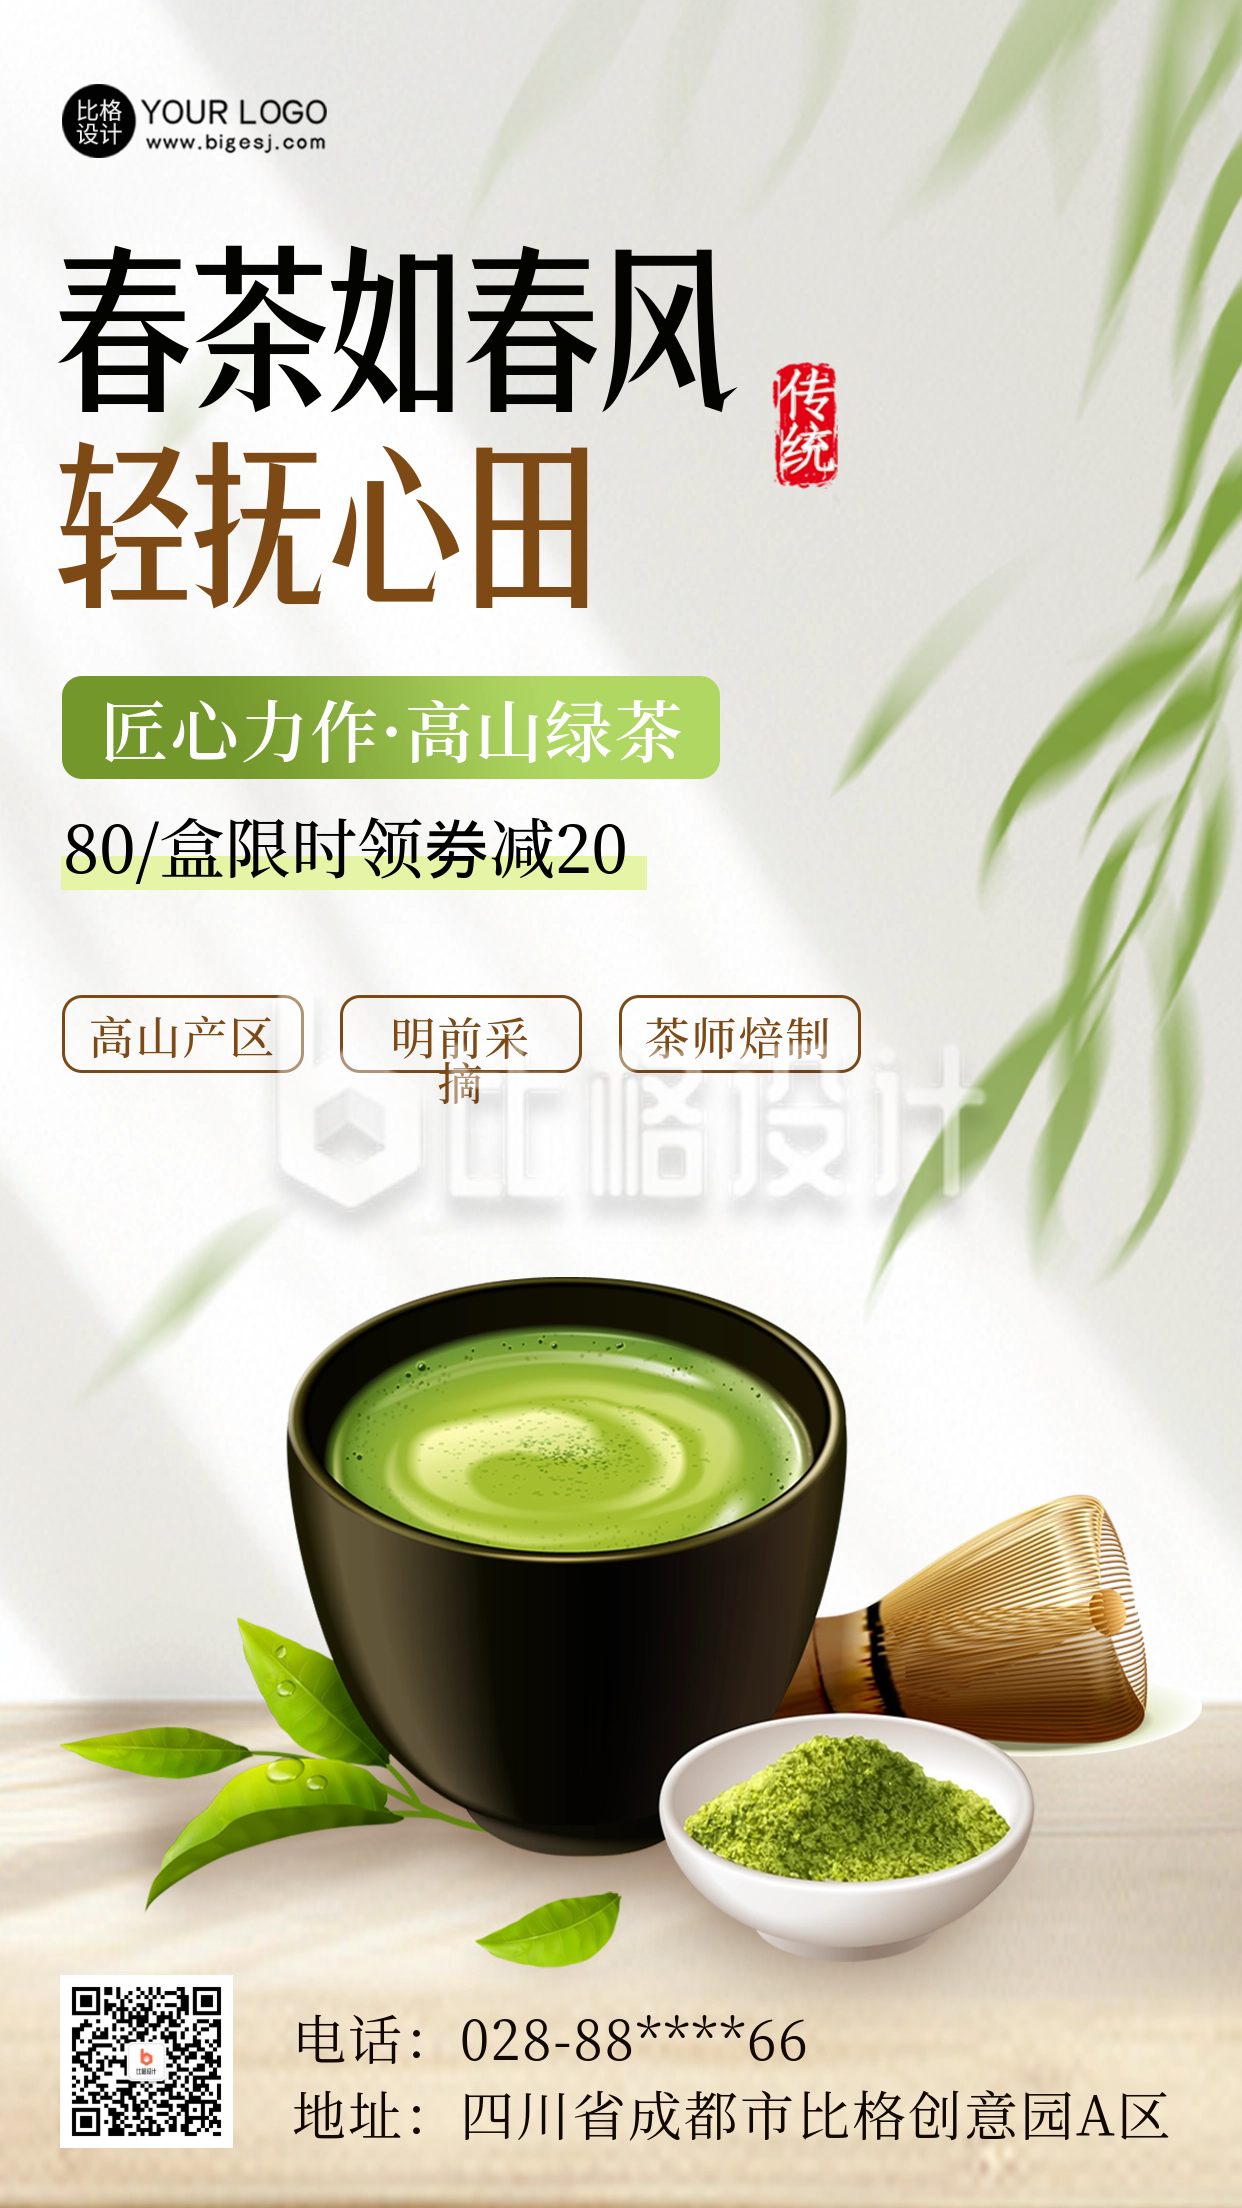 绿茶优惠促销活动海报